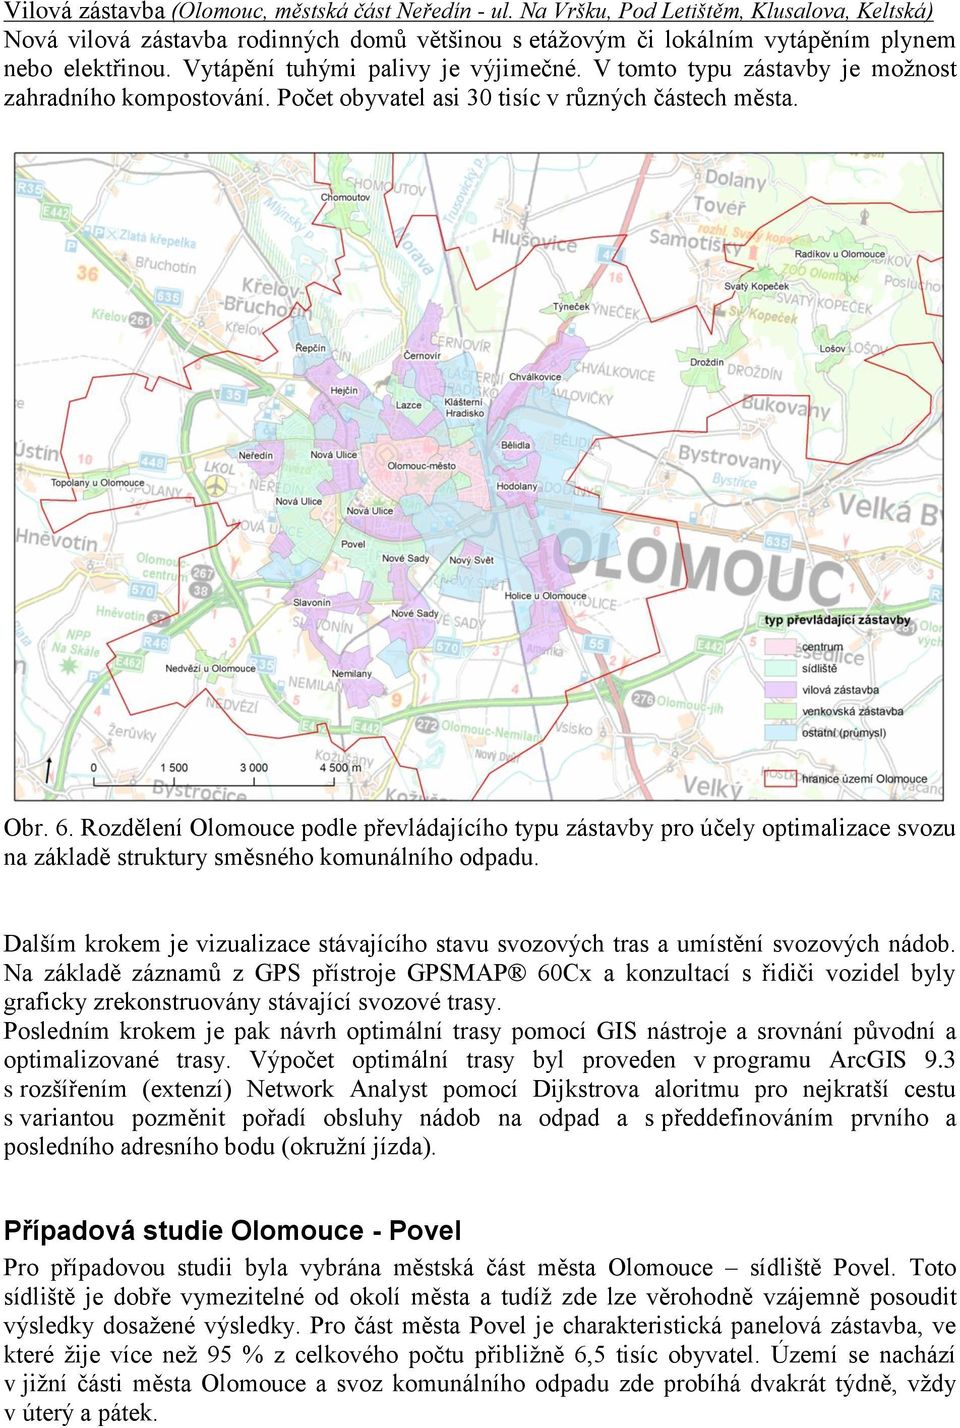 Rozdělení Olomouce podle převládajícího typu zástavby pro účely optimalizace svozu na základě struktury směsného komunálního odpadu.